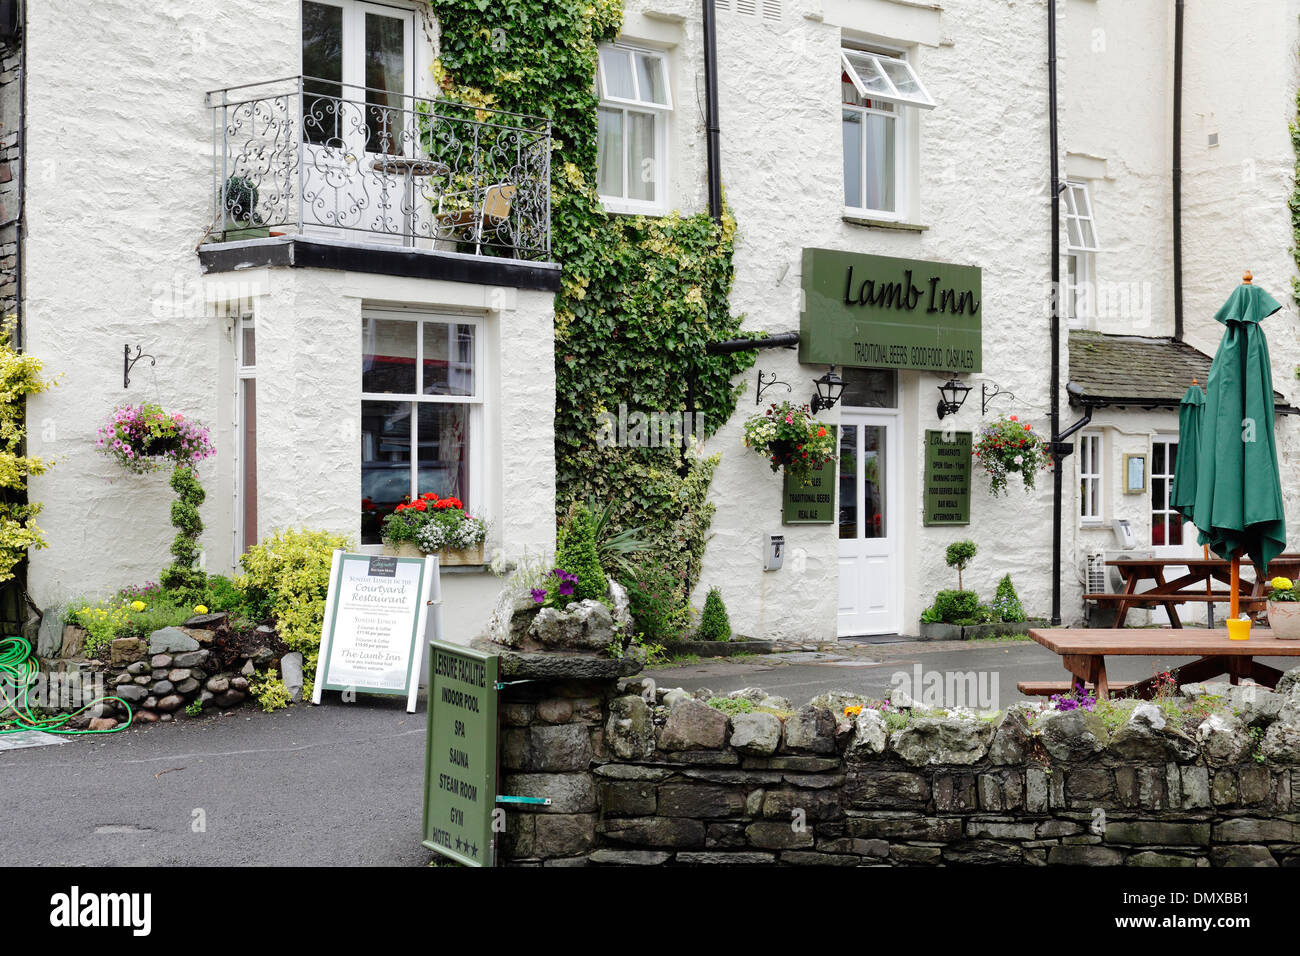 El Lamb Inn aldea tradicional pub y restaurante, parte de la Red Lion Hotel en Grasmere, Lake District, Cumbria, Inglaterra, Reino Unido. Foto de stock